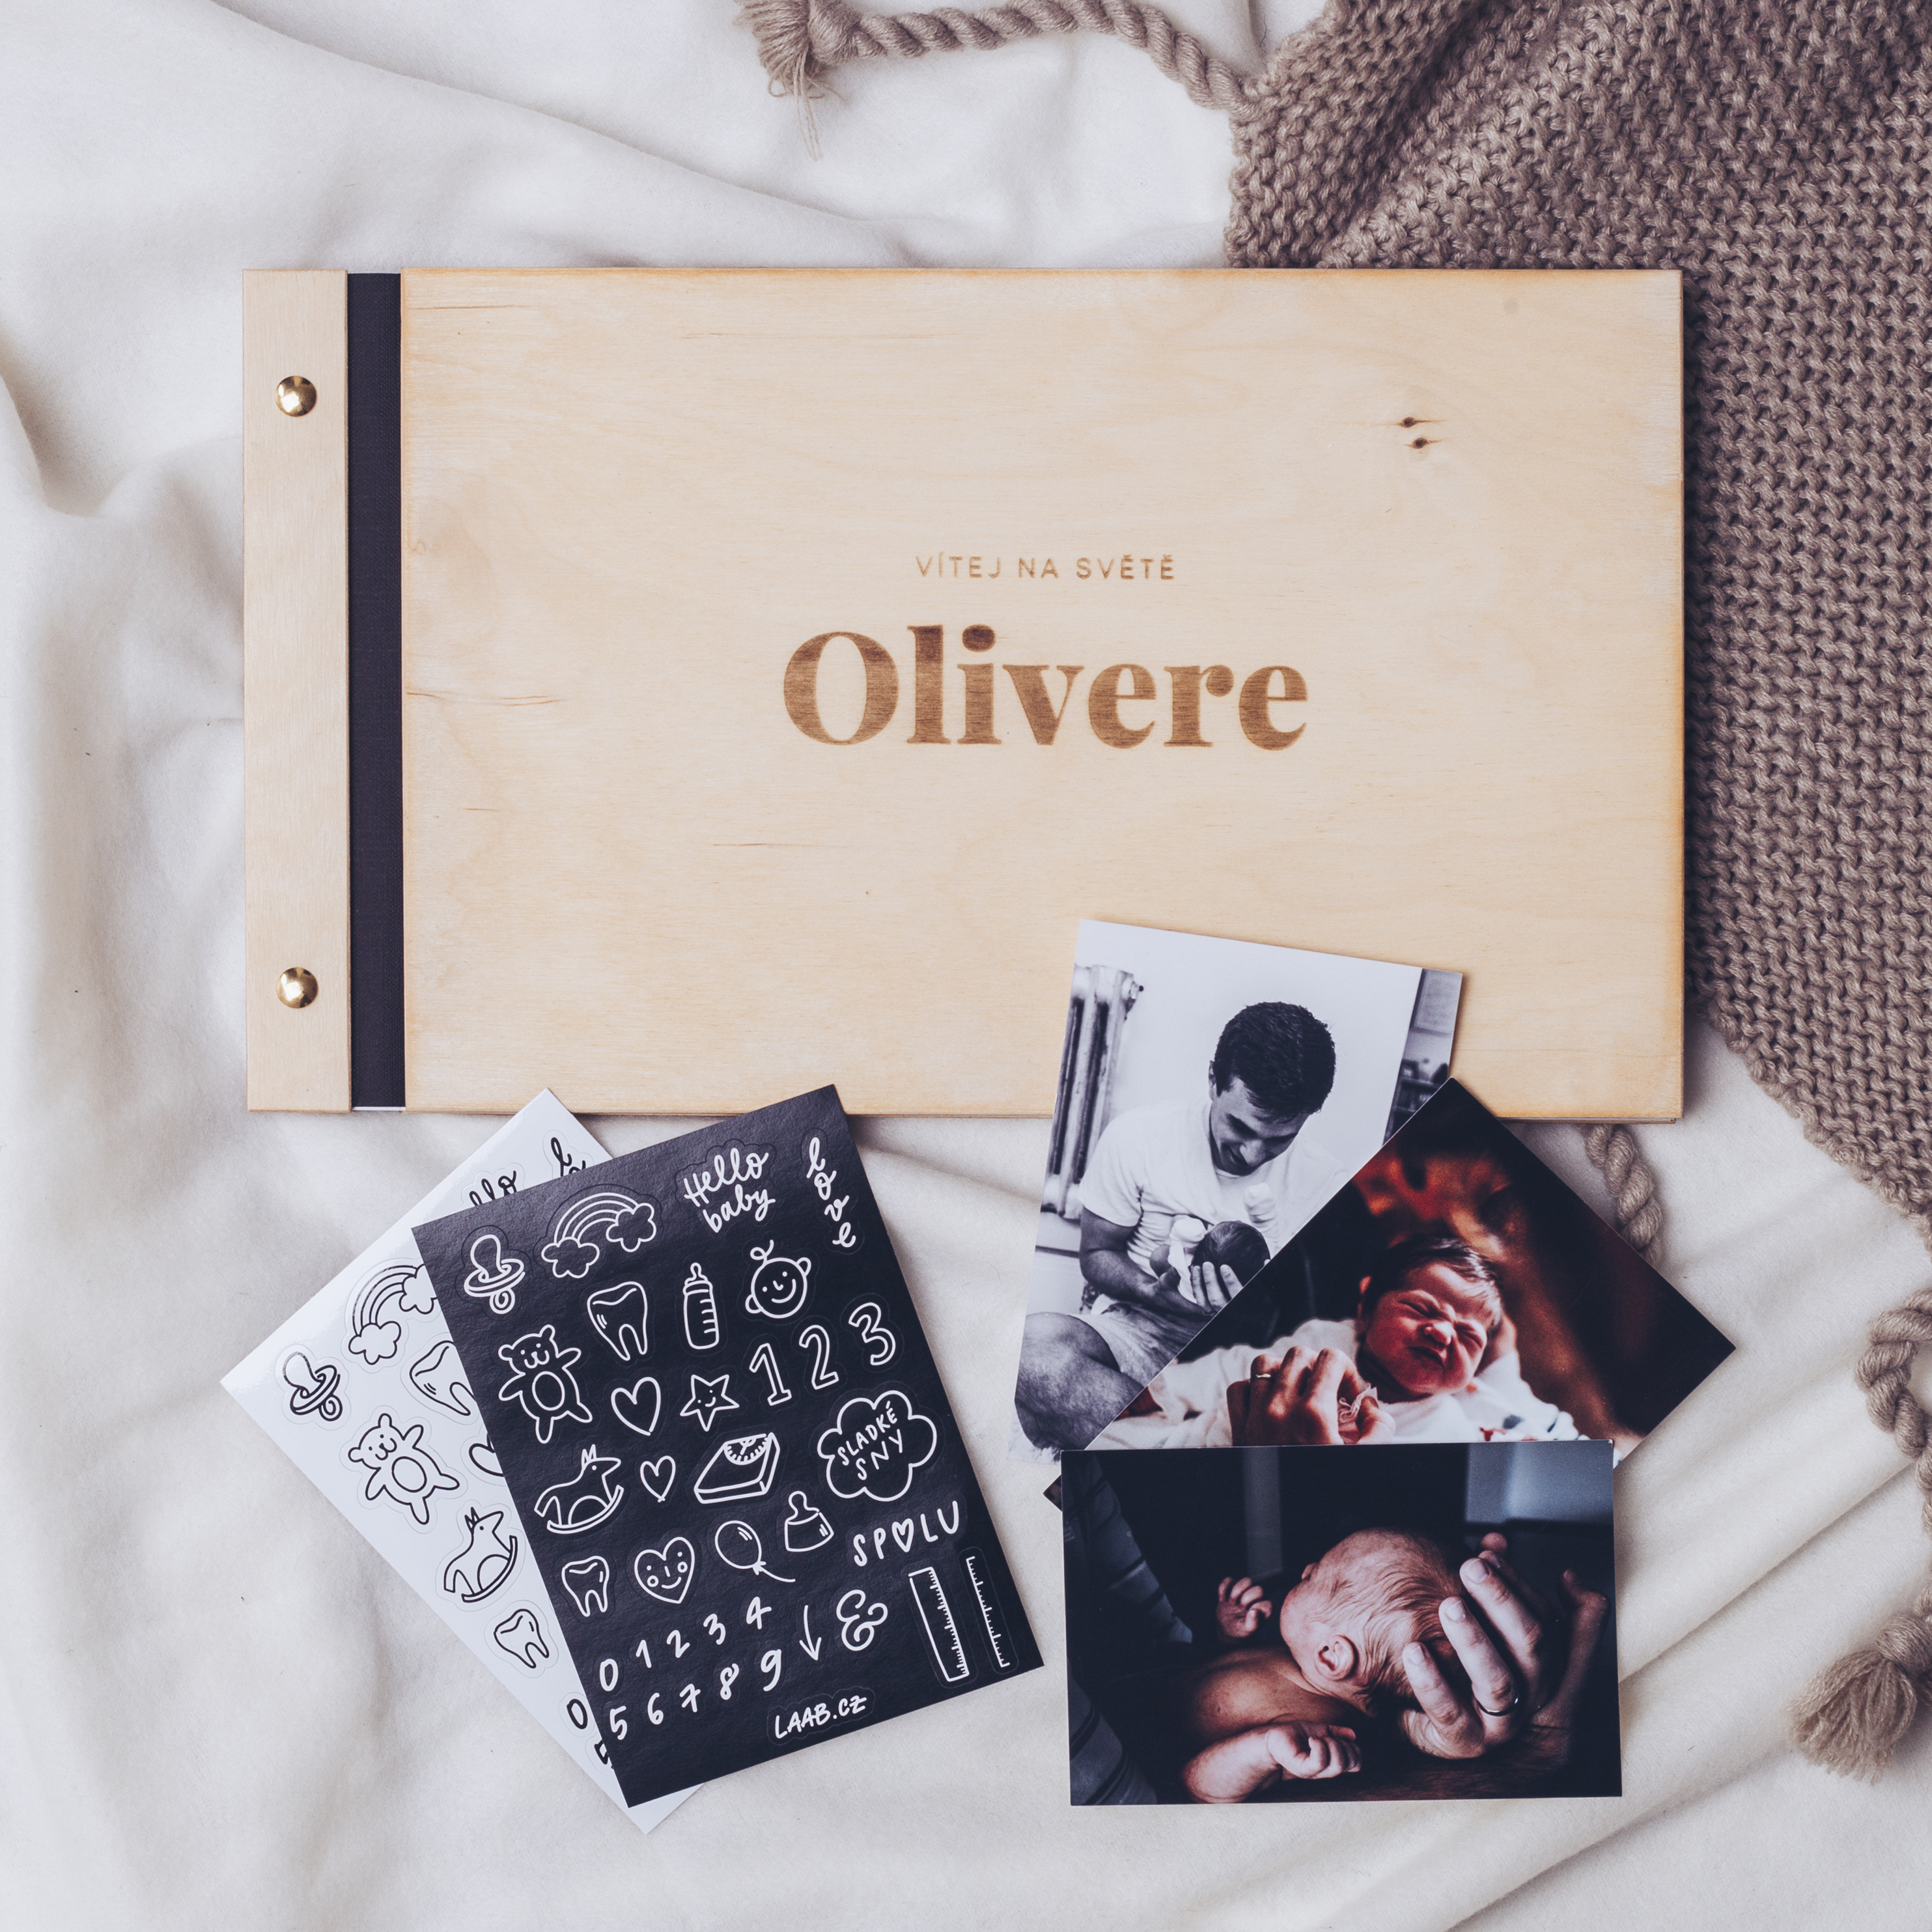 dřevěné fotoalbum Oliver: FORMÁT FOTOALBA na šířku, POČET LISTŮ 30, FORMÁT FOTOALBA na šířku, POČET LISTŮ 35 s prokladovými listy, BARVA LISTŮ černá